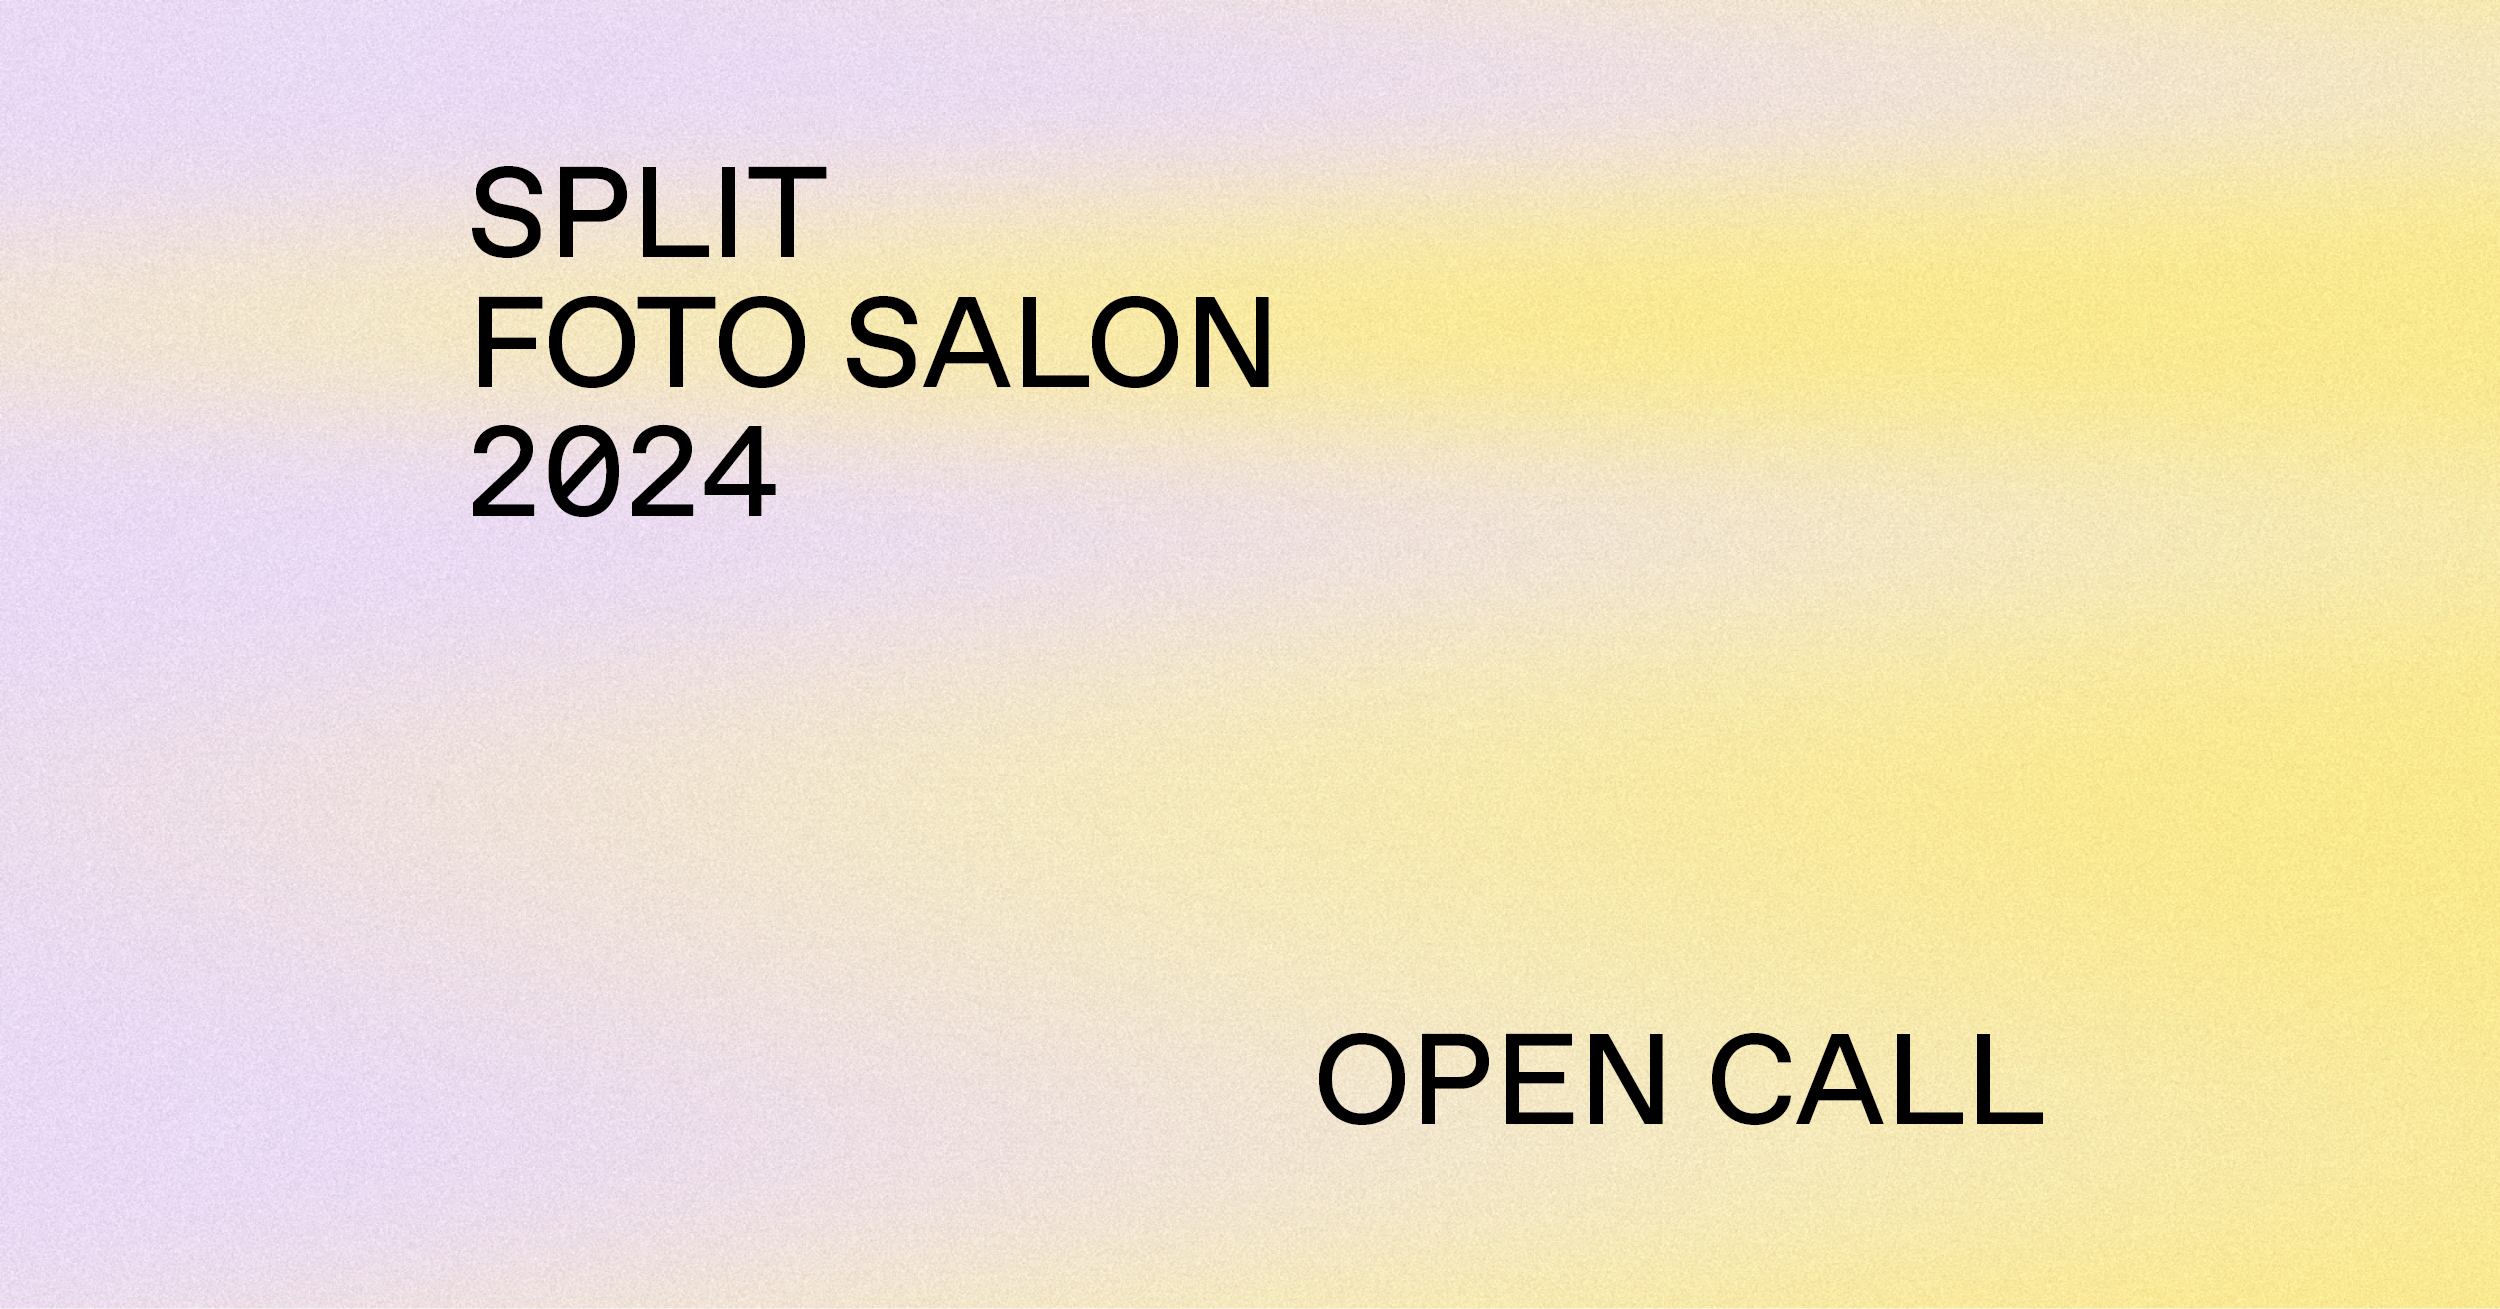 Otvorene prijave za treće izdanja Split foto salona!